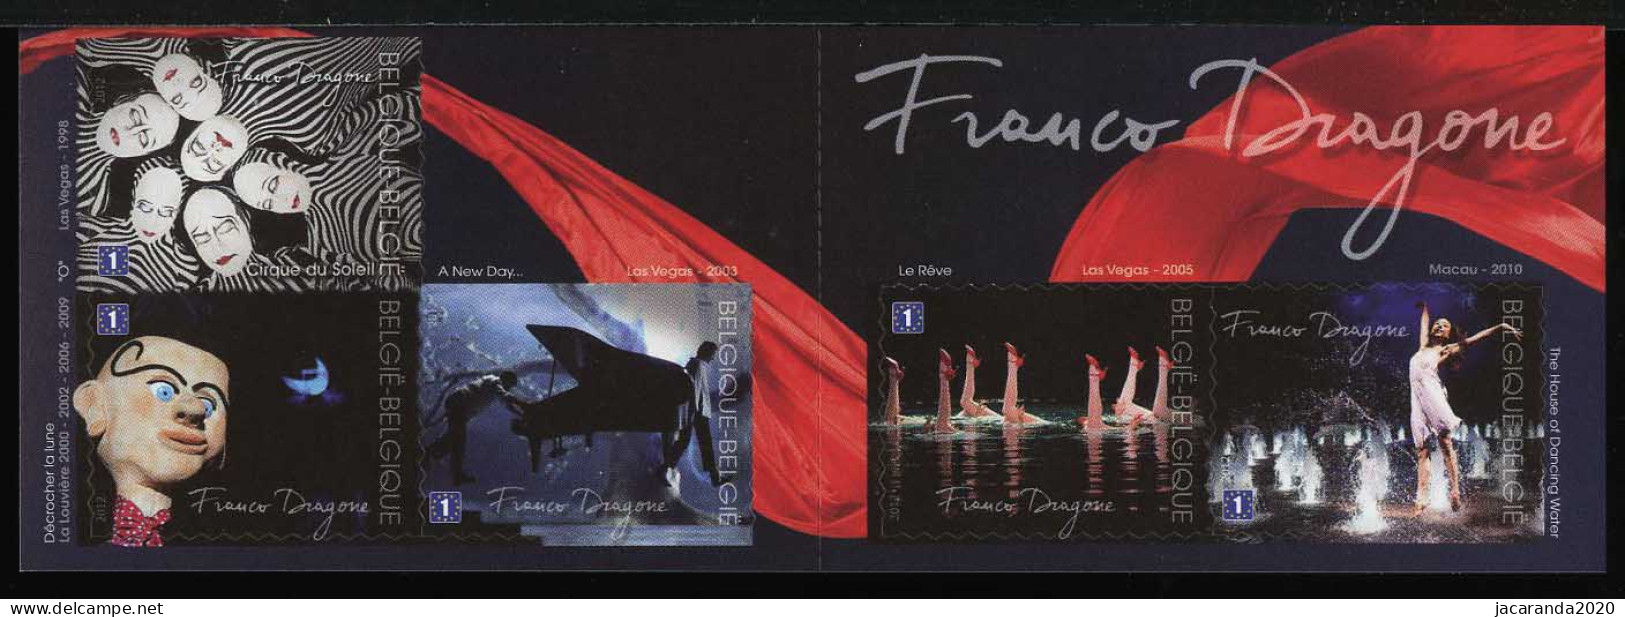 België B127 - Franco Dragone - Cirque Du Soleil - 1E - Zelfklevend - Autocollants - 2012 - 1997-… Validità Permanente [B]